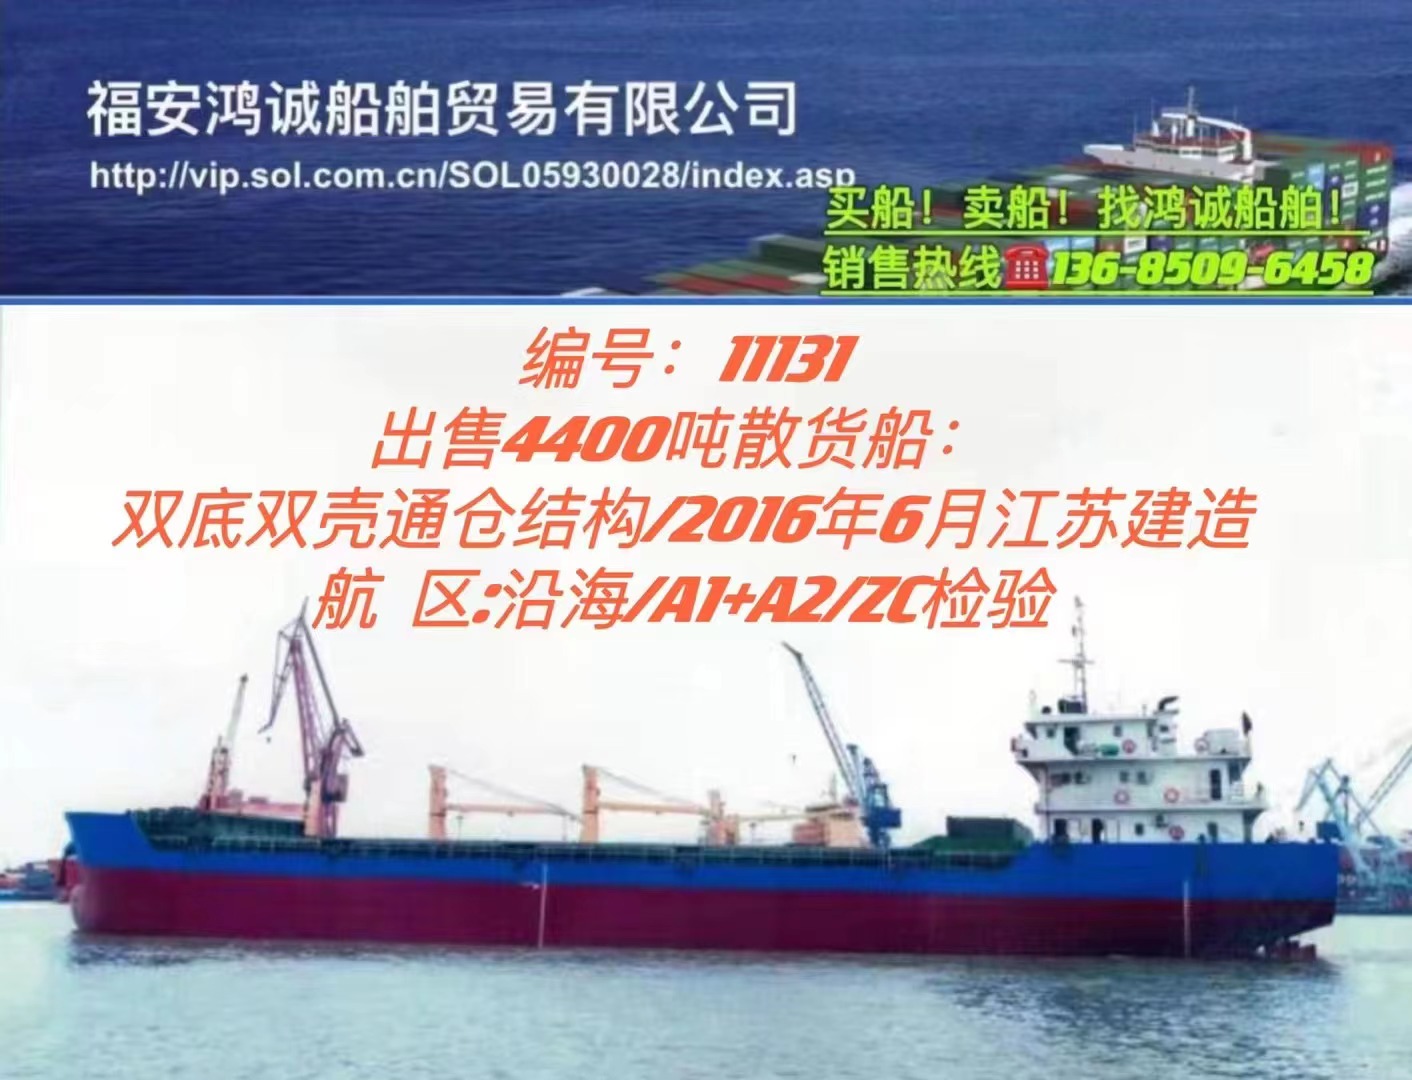 出售4400吨散货船： 双底双壳通仓结构/ 2016年江苏建造